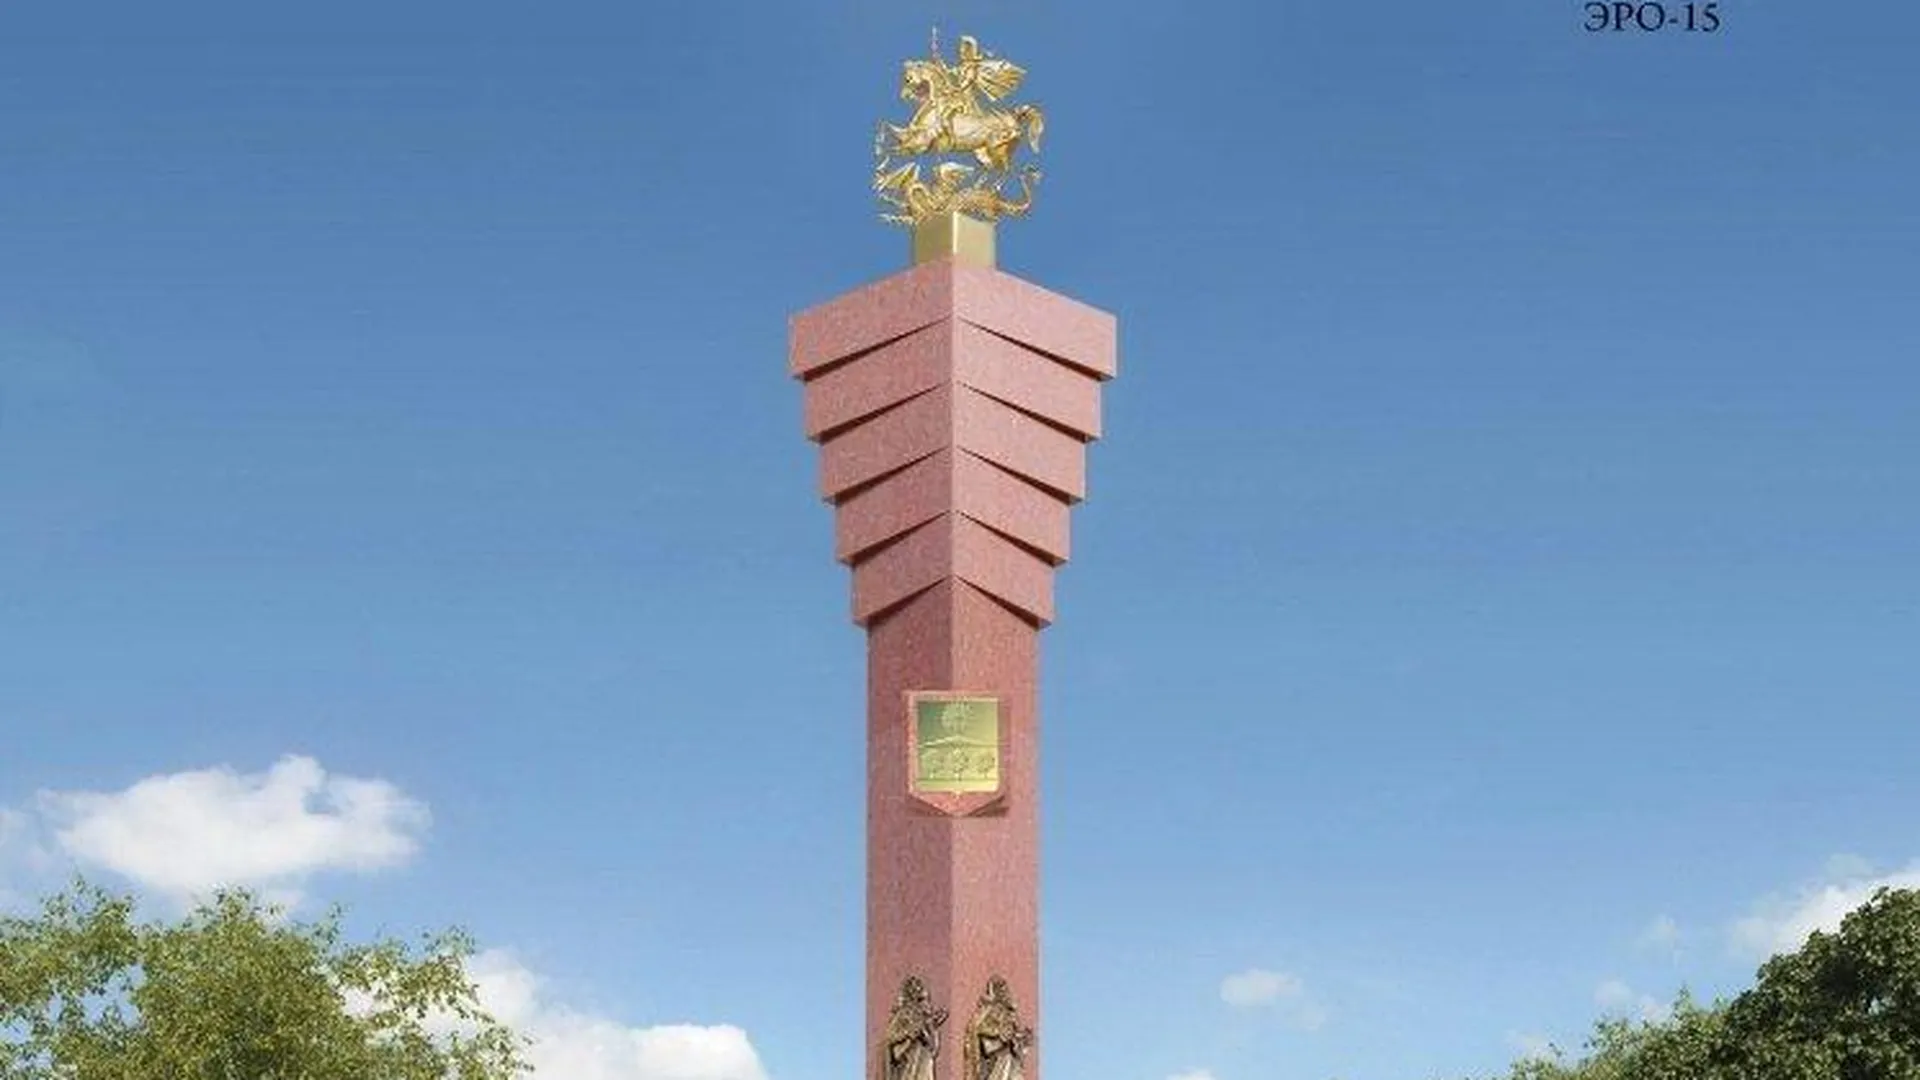 Работу солнечногорского скульптора выбрали знаком городов воинской доблести